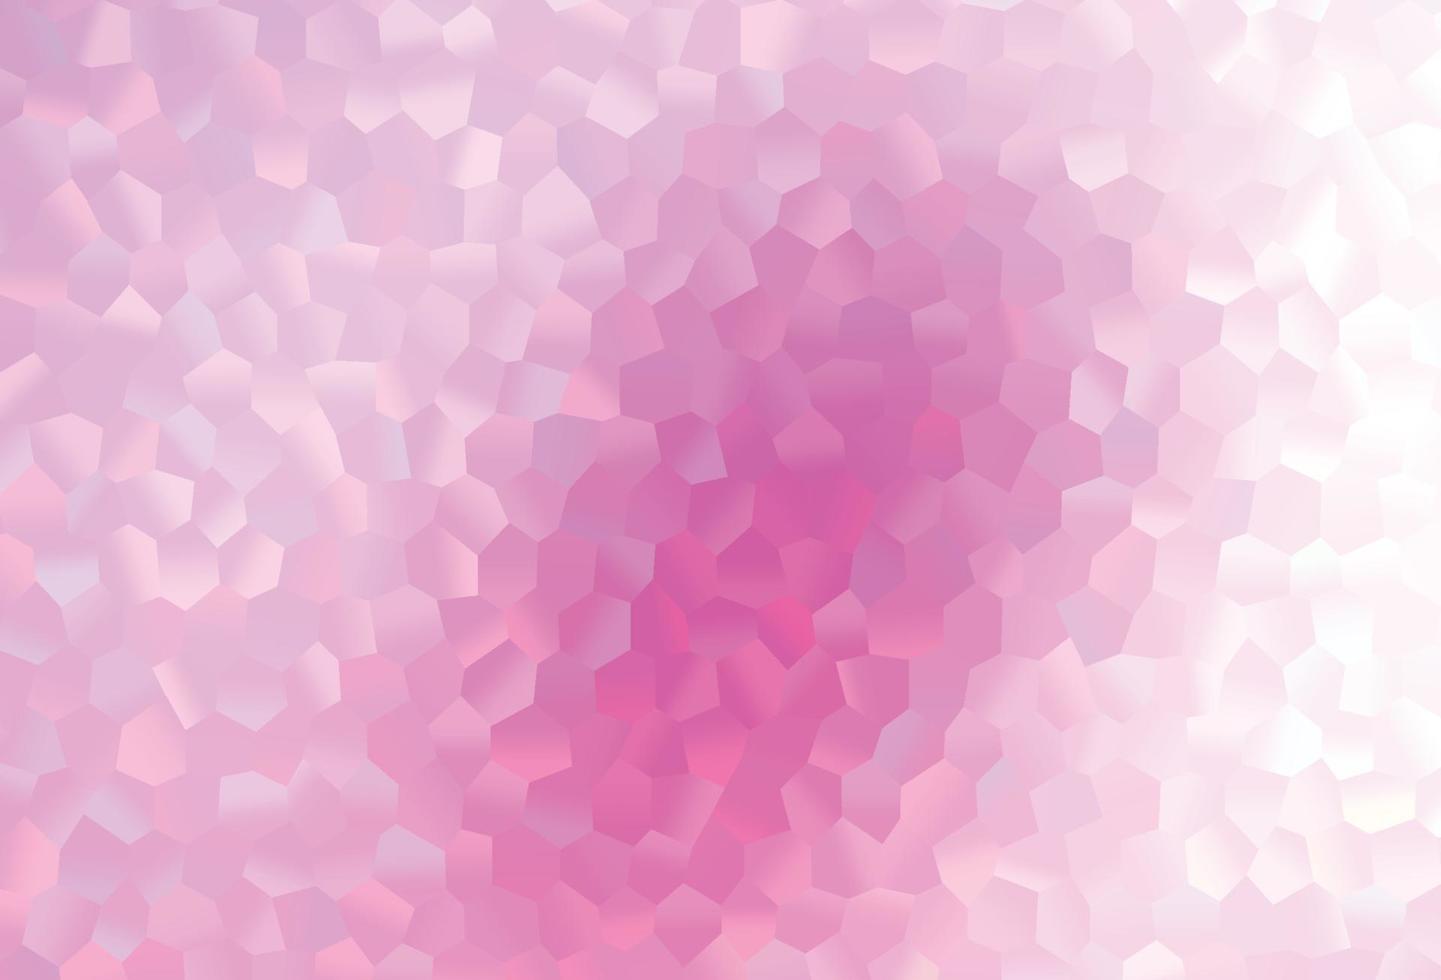 patrón de vector rosa claro con hexágonos de colores.